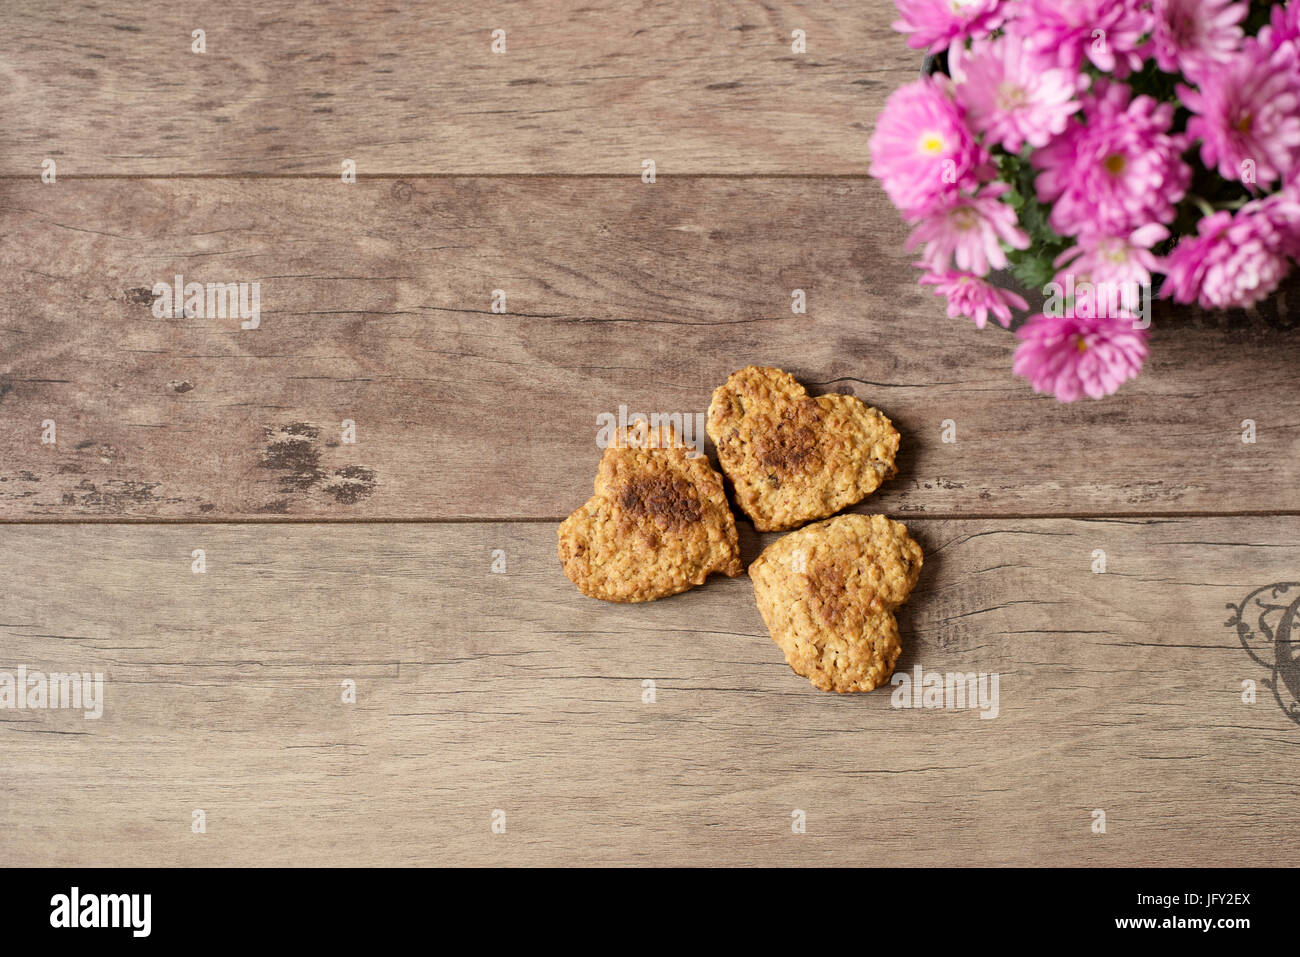 Les cookies en forme de cœur. Vue de dessus de cookies faits maison. Healthy dessert à la cannelle, dates et les noix. Fond de bois rustique Banque D'Images